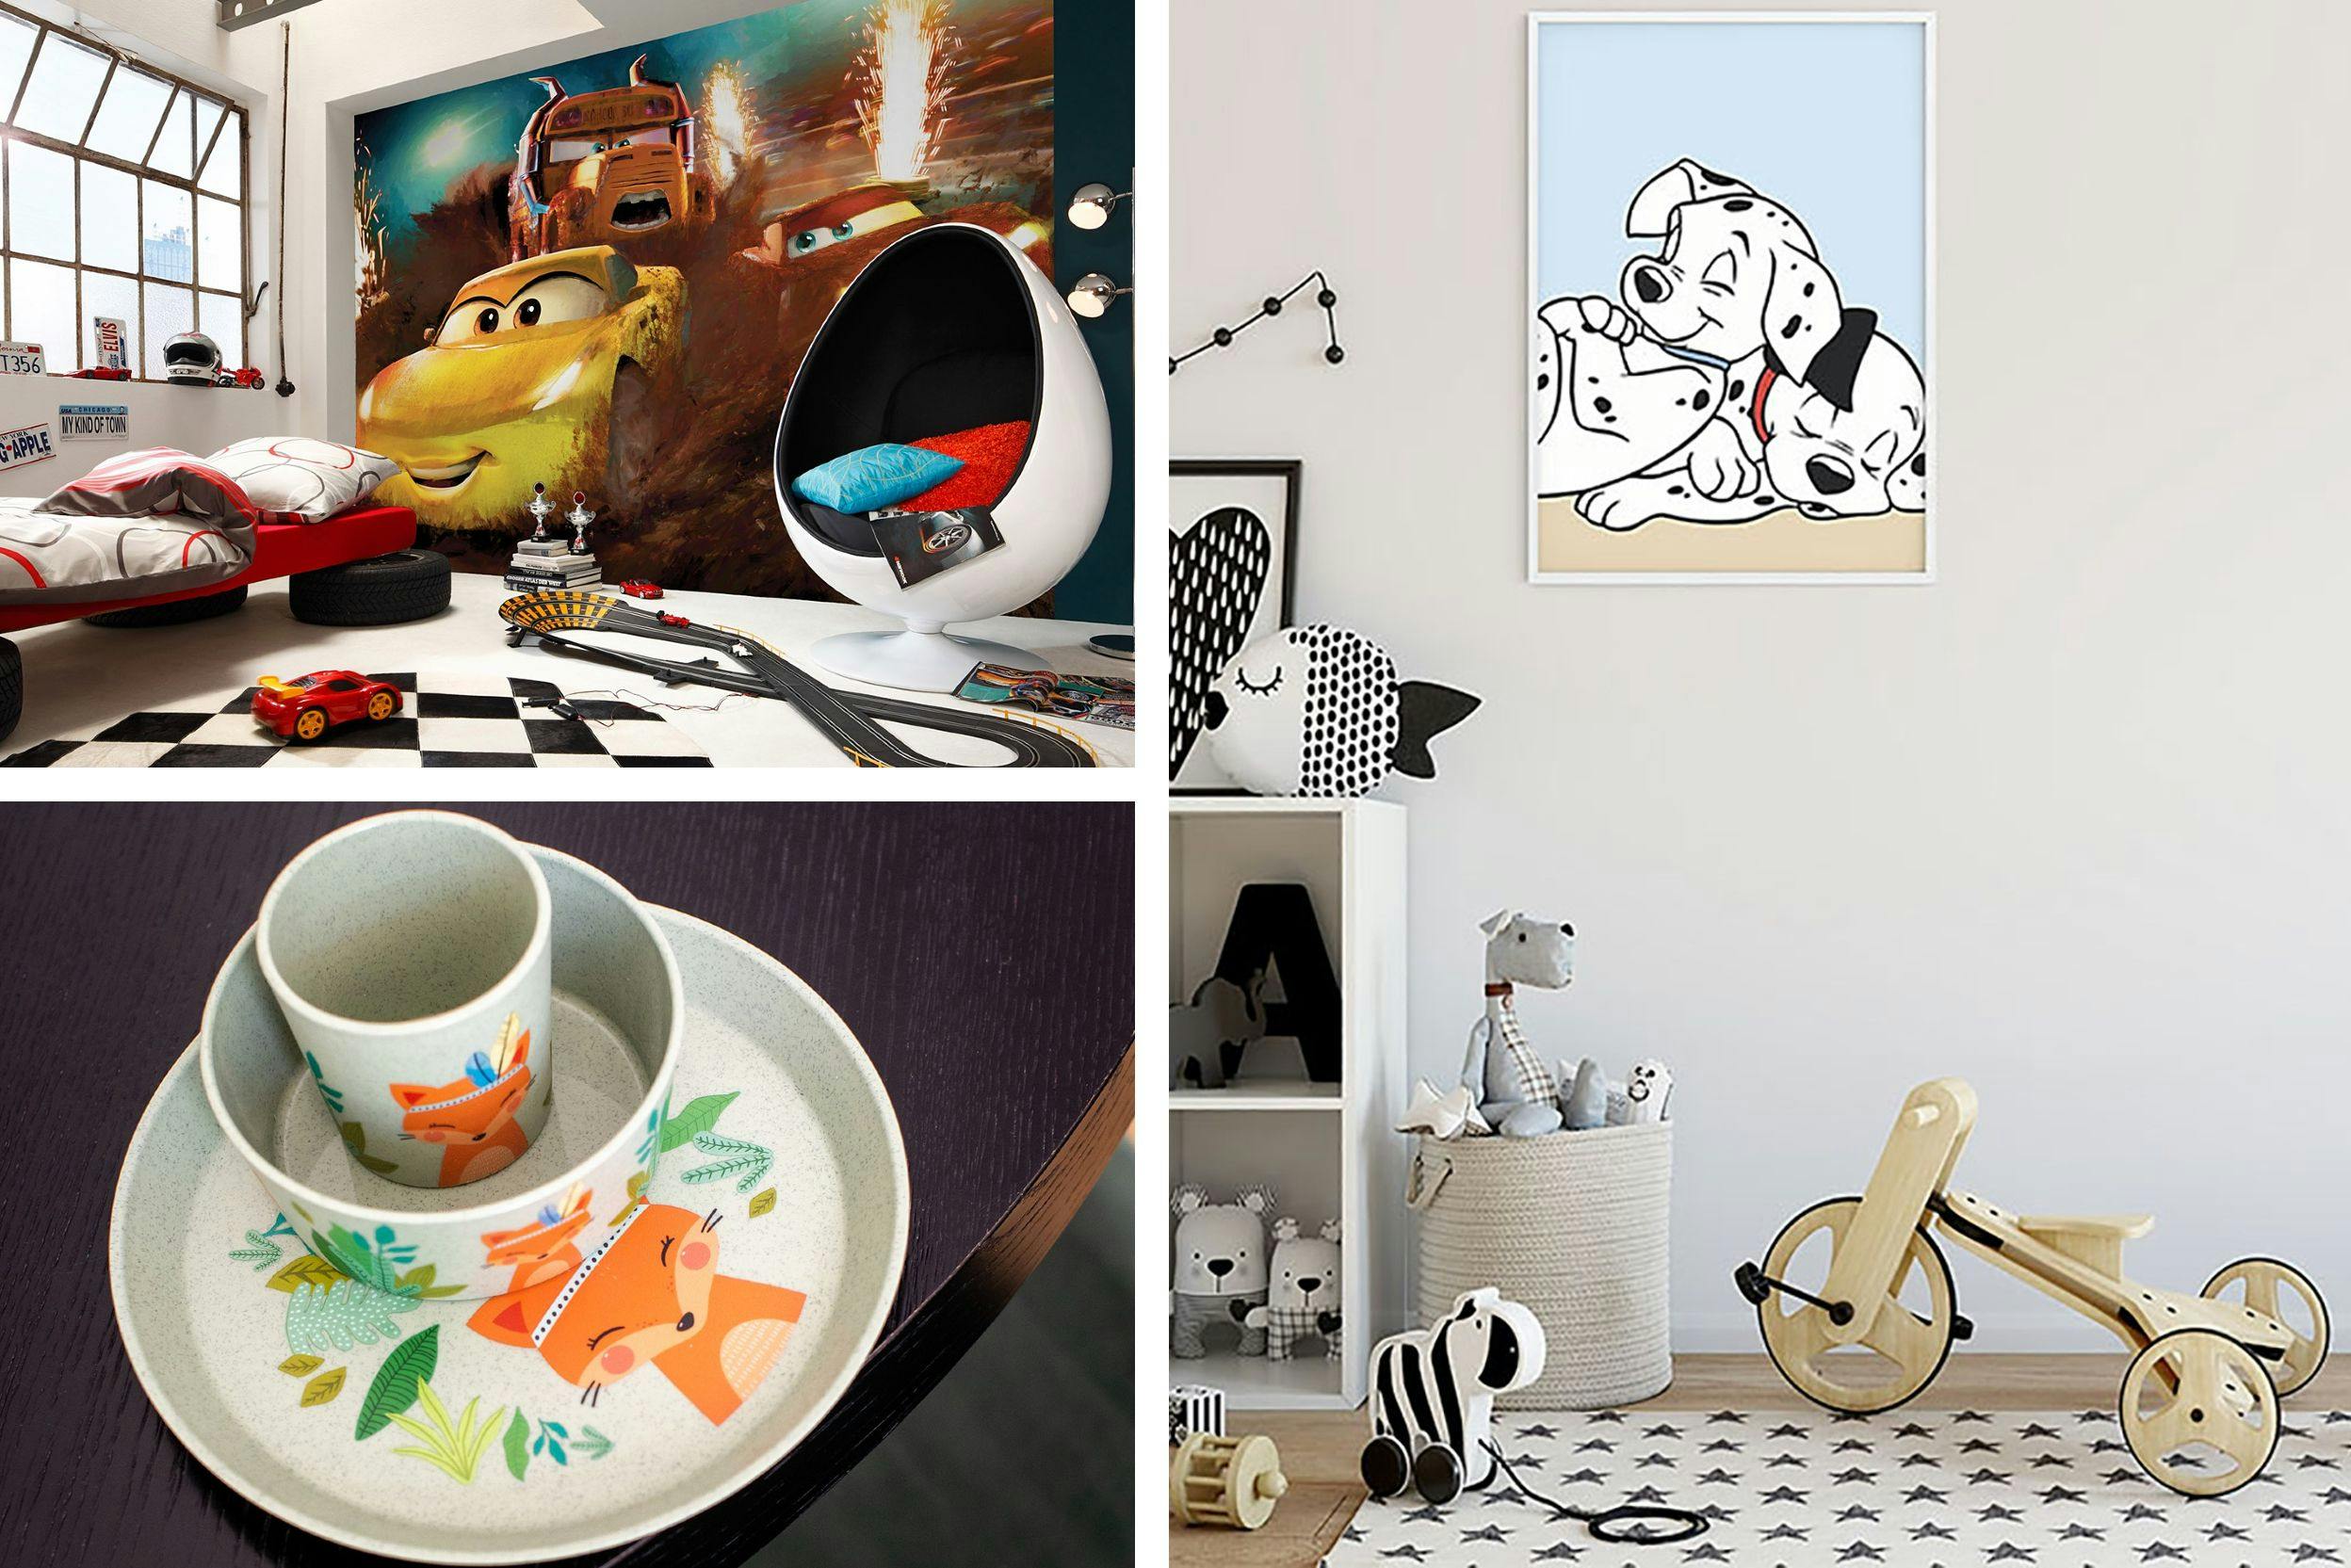 Trois photos : la première, chambre d'enfant avec mur d'accent et papier peint de la série Cars, la deuxième, vaisselle pour enfant, et la troisième, un tableau des 101 dalmatiens accroché au mur dans une chambre d'enfant